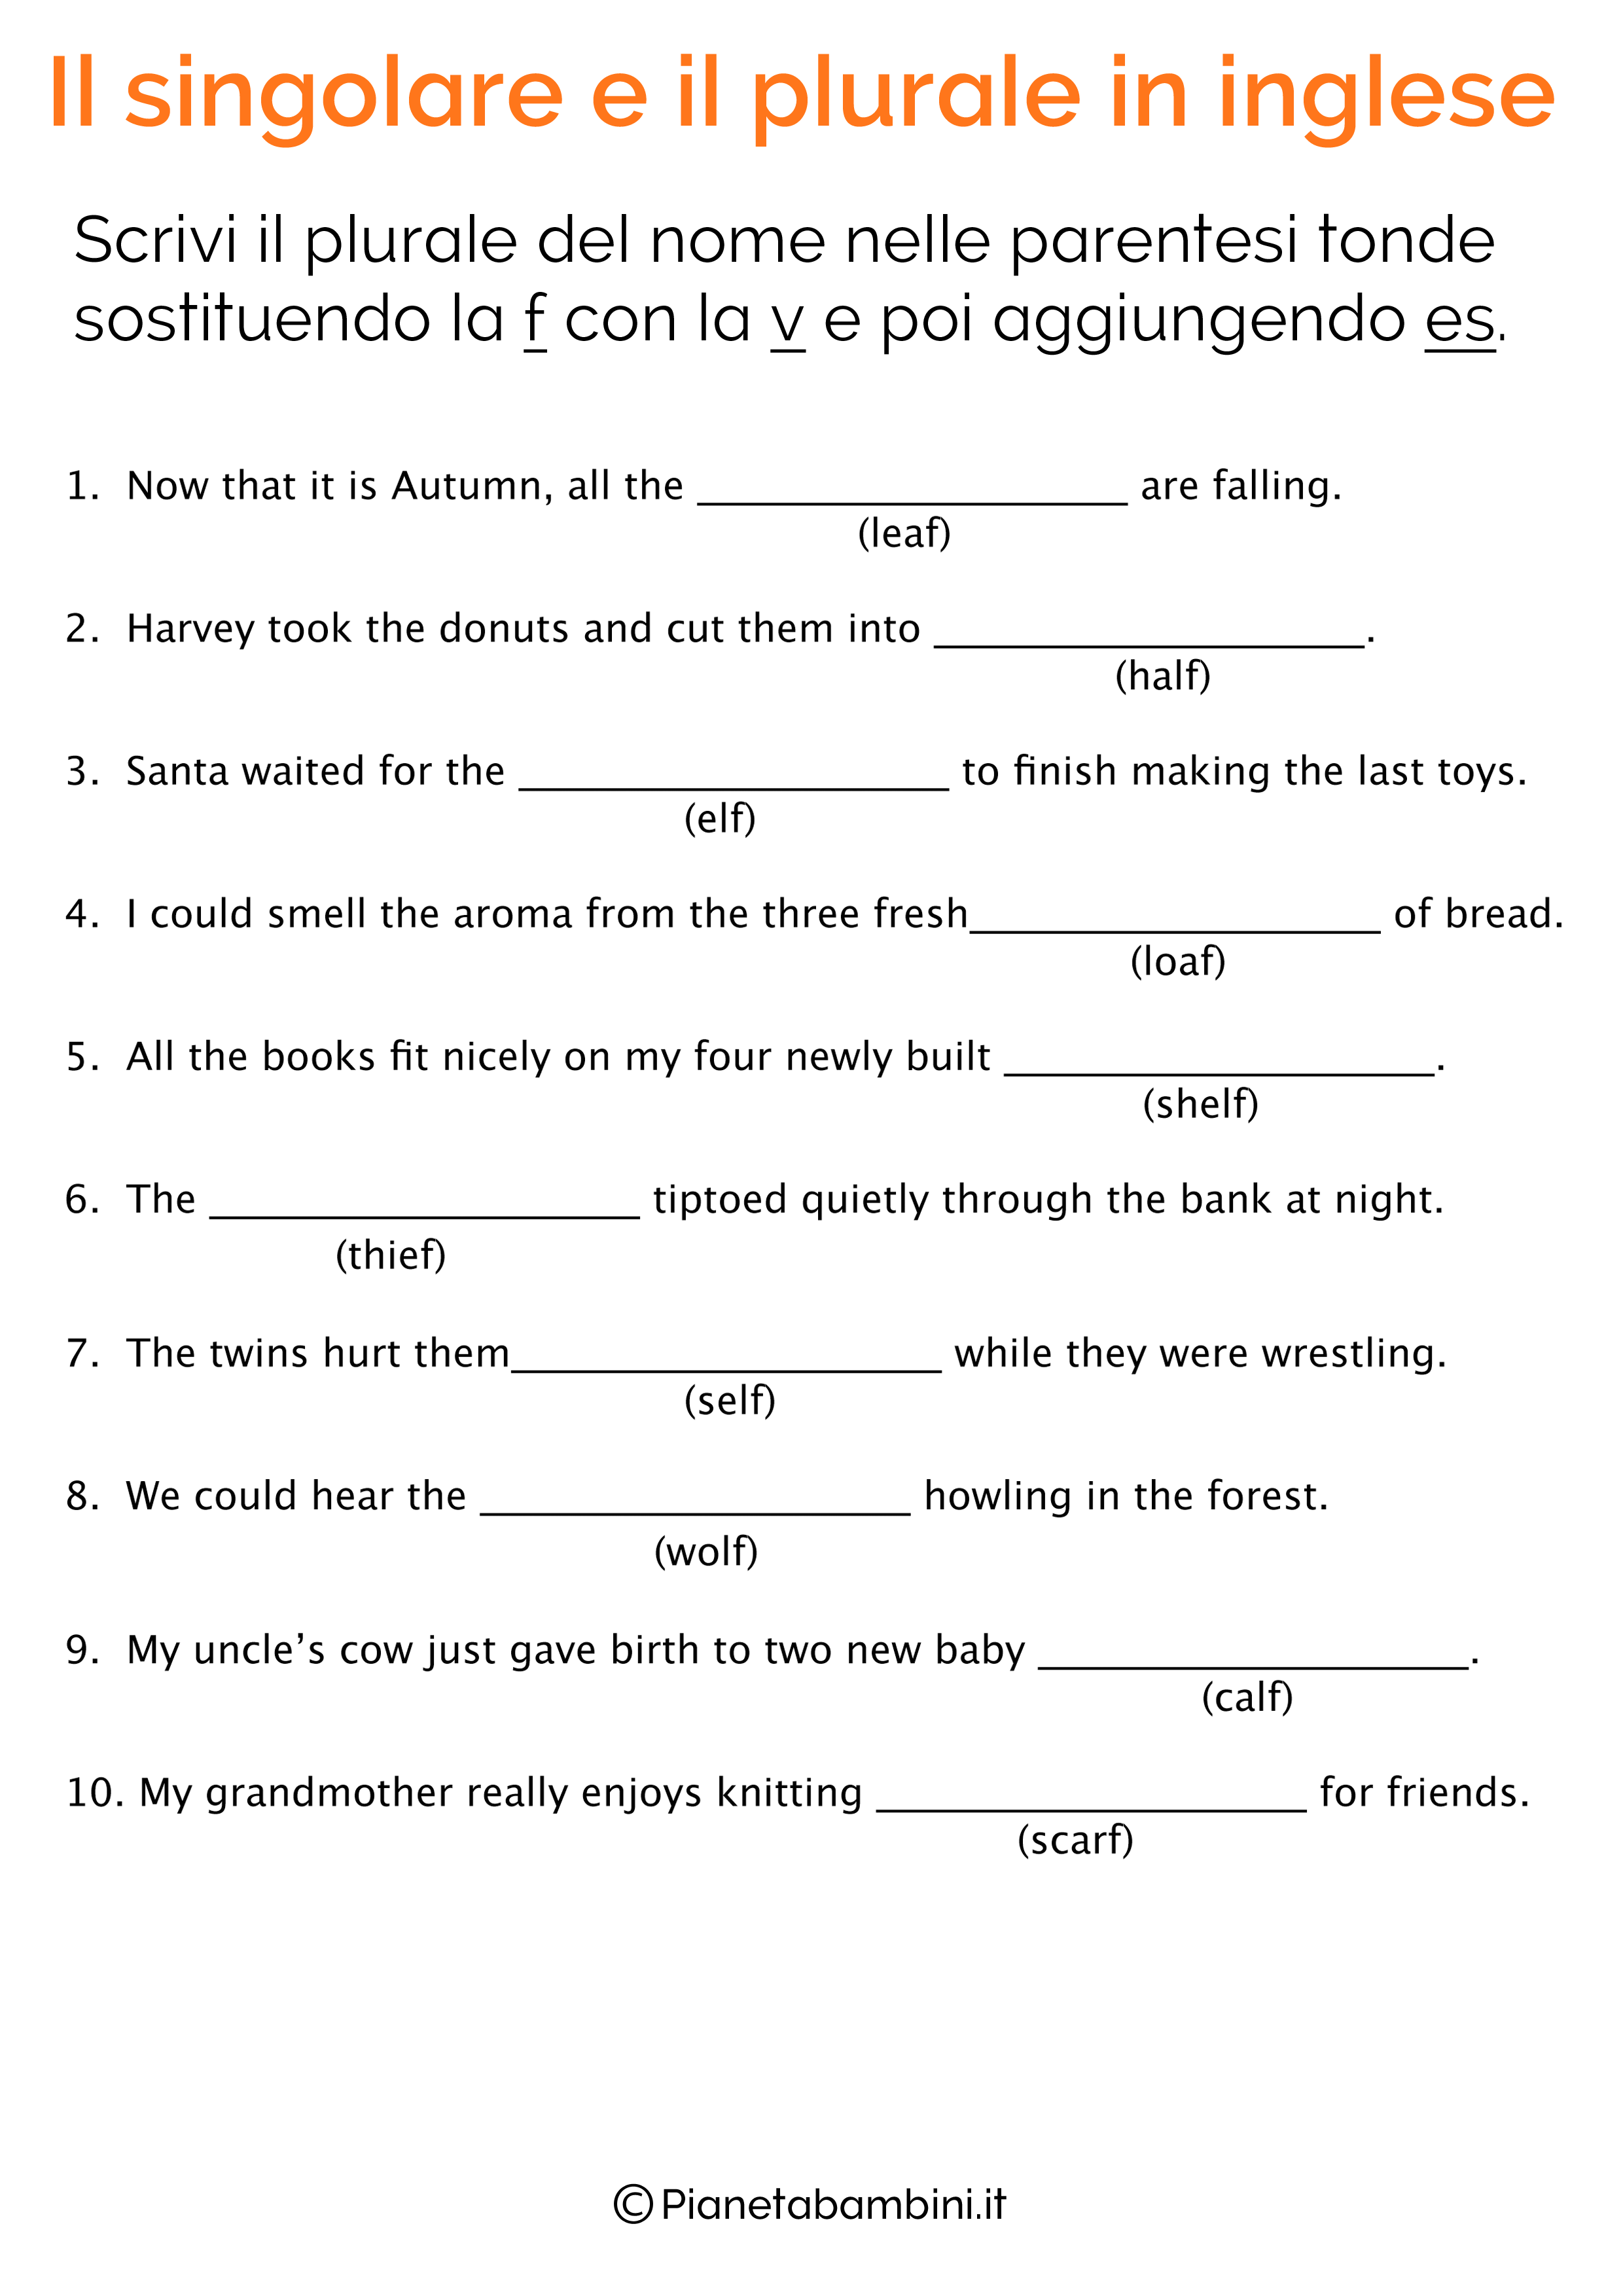 Esercizi sul singolare e plurale in inglese pagina 14